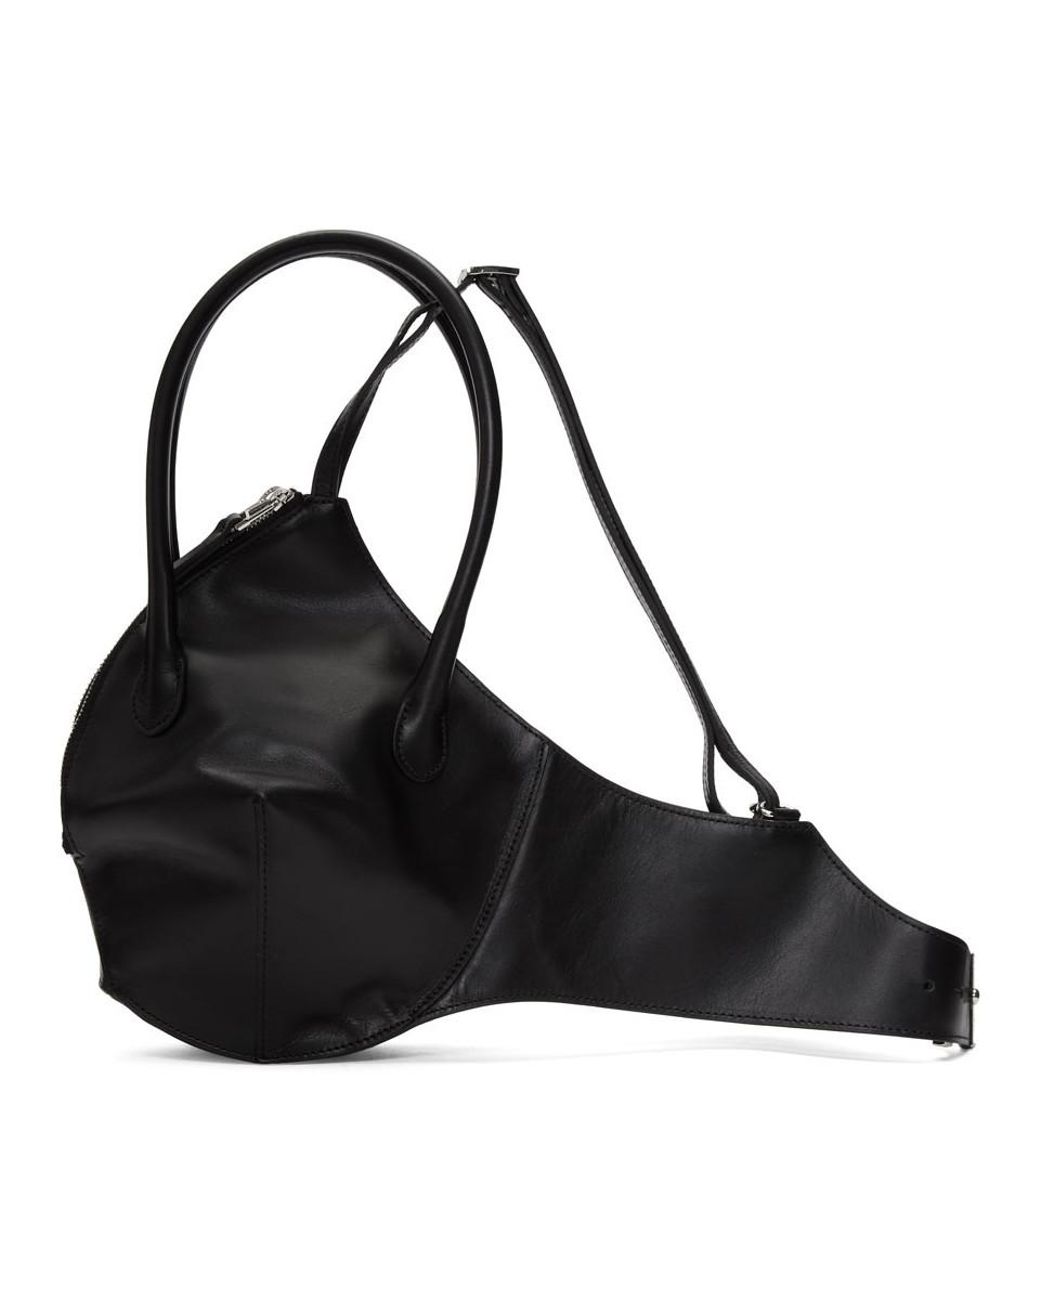 Helmut Lang Black Leather Bra Bag